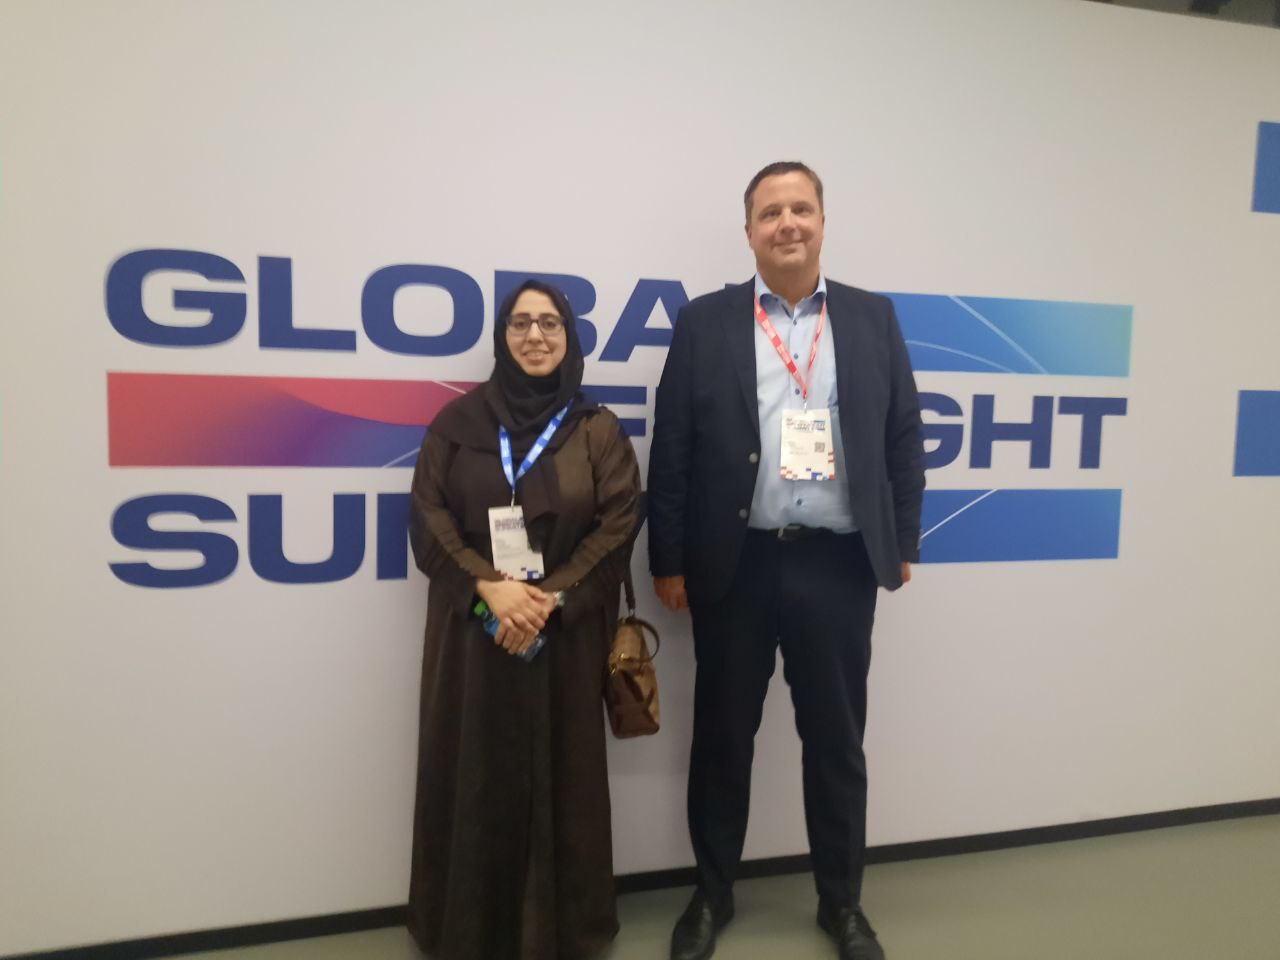 Global Freight Summit 2023 in Dubai, global trade